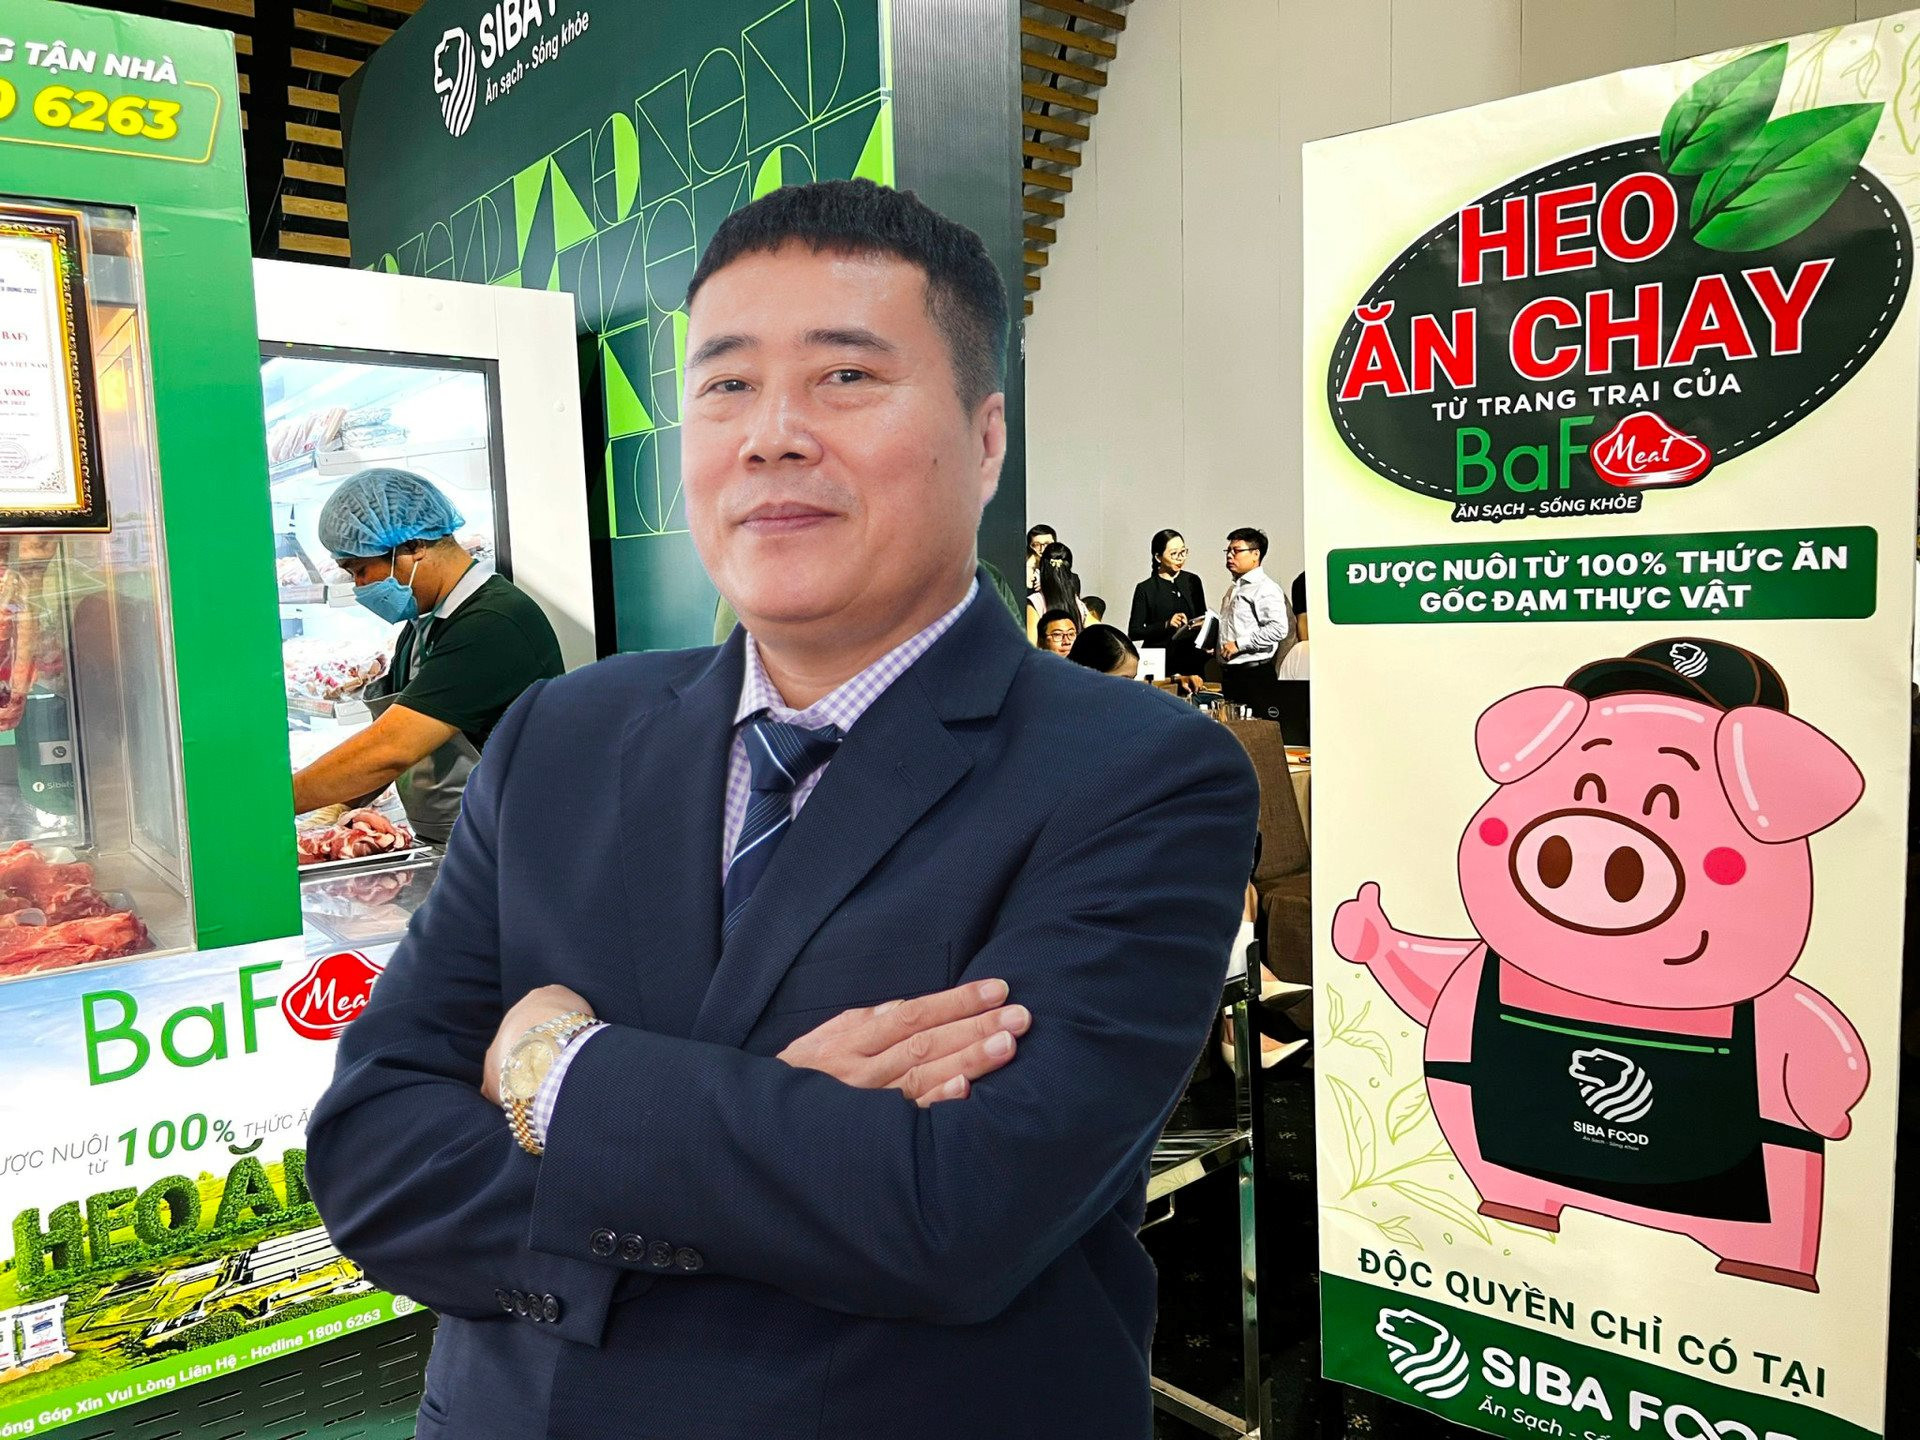 Trại lợn của đại gia “heo ăn chay” Trương Sỹ Bá tại Hòa Bình bị xử phạt do xả thải trái phép ra môi trường - Ảnh 1.